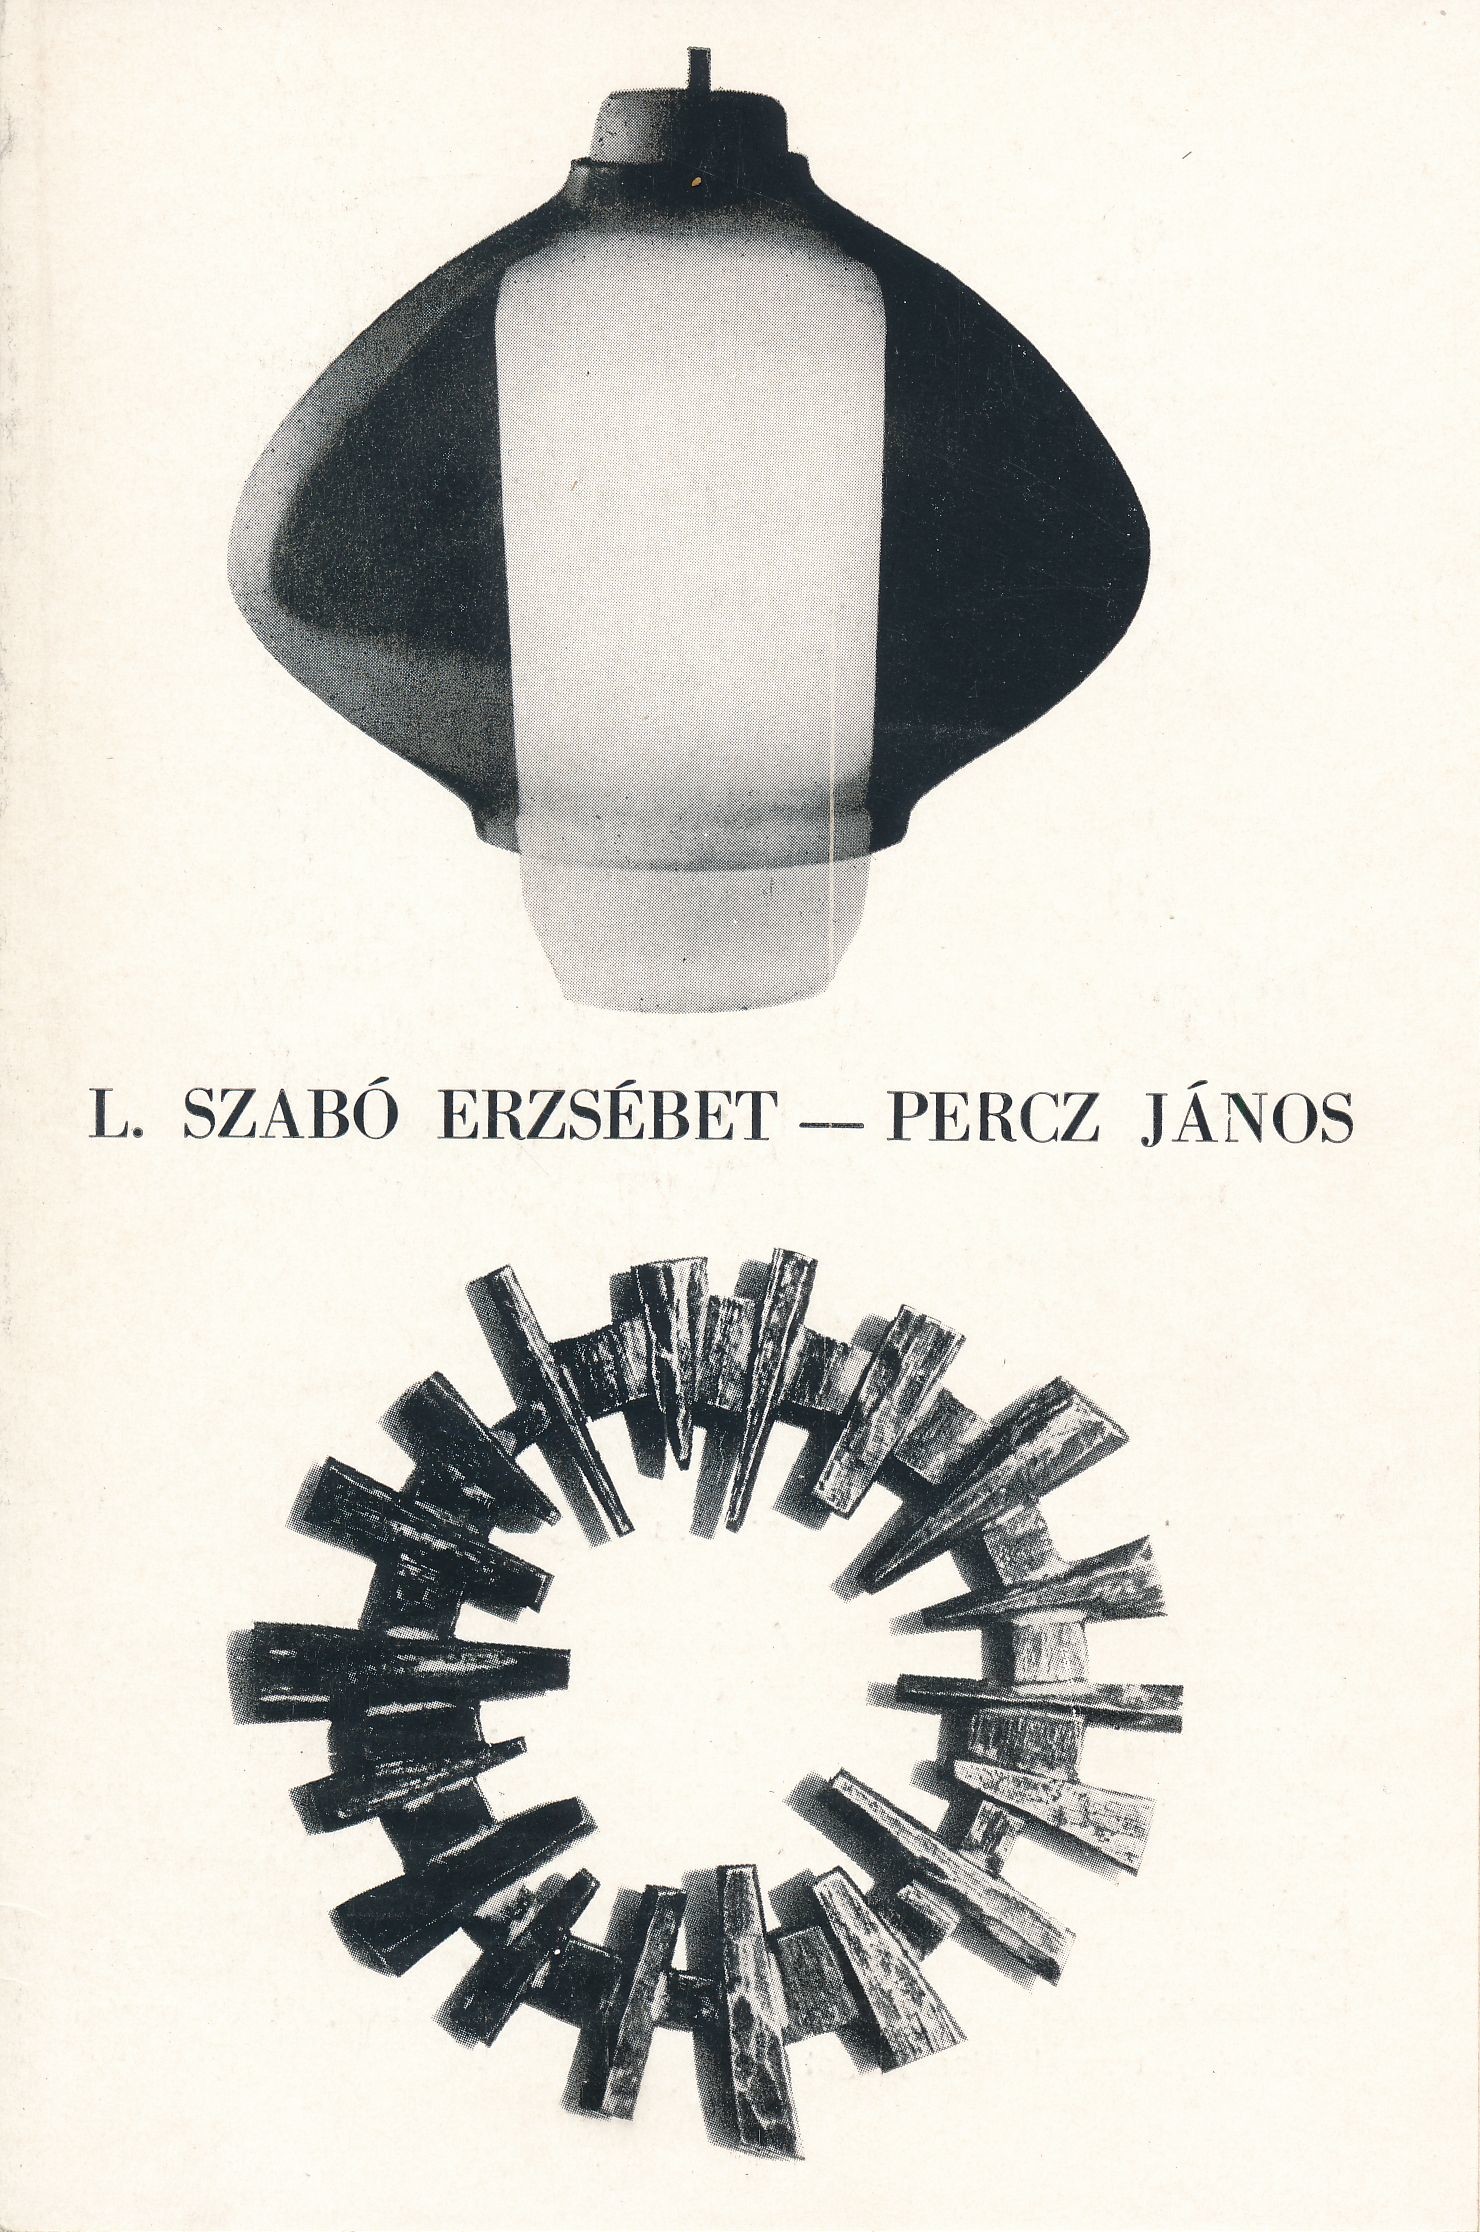 L. Szabó Erzsébet és Percz János kiállítása Szeged 1969 (Design DigiTár – Iparművészeti archívum CC BY-NC-SA)